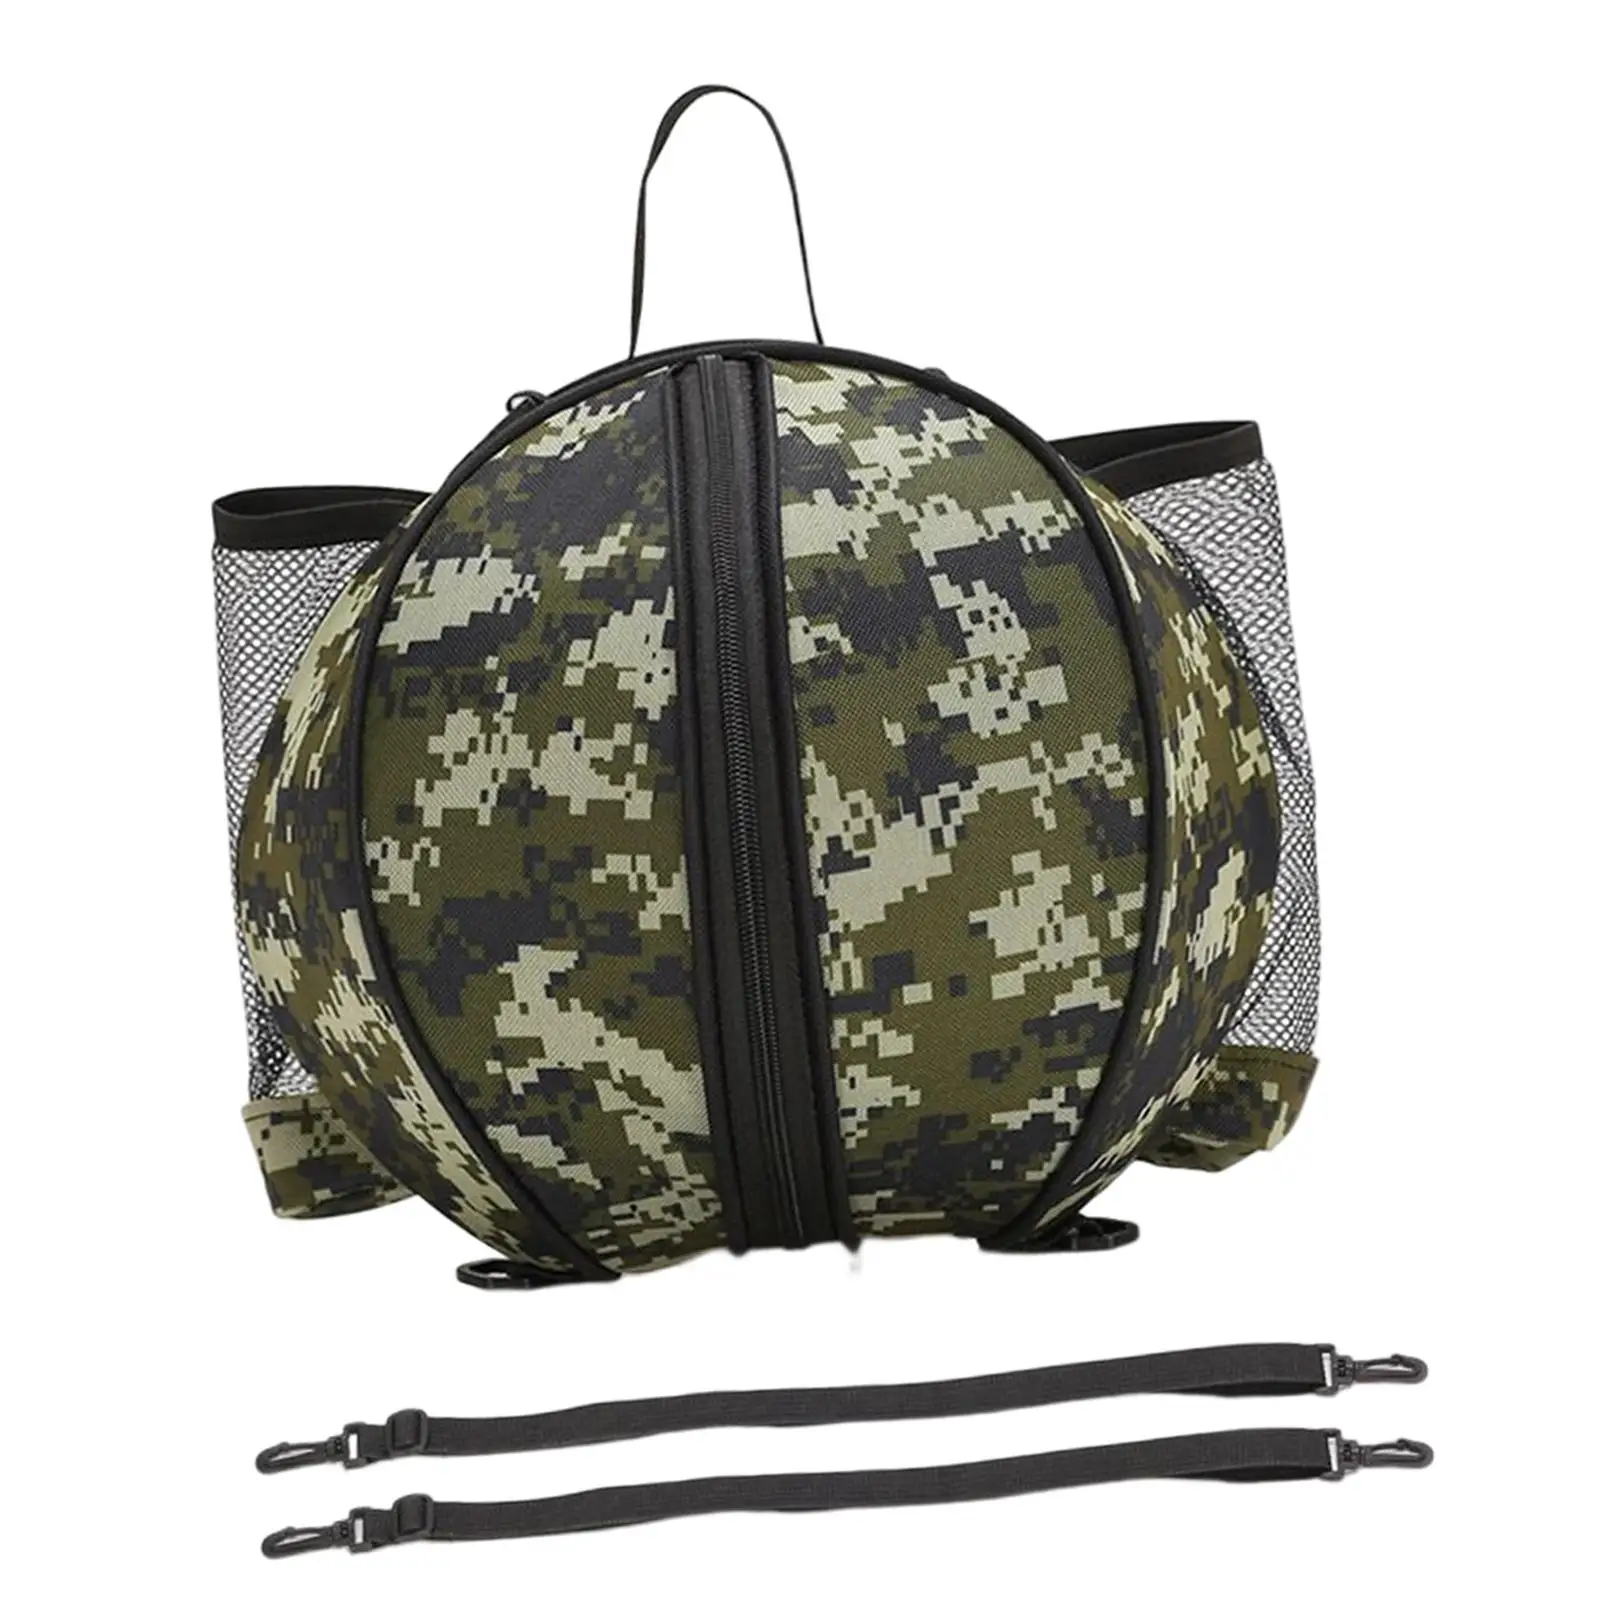 Basketball Bag Backpack Waterproof Knapsacks with Adjustable Shoulder Strap Holder for Football Volleyball Soccer Team Sports